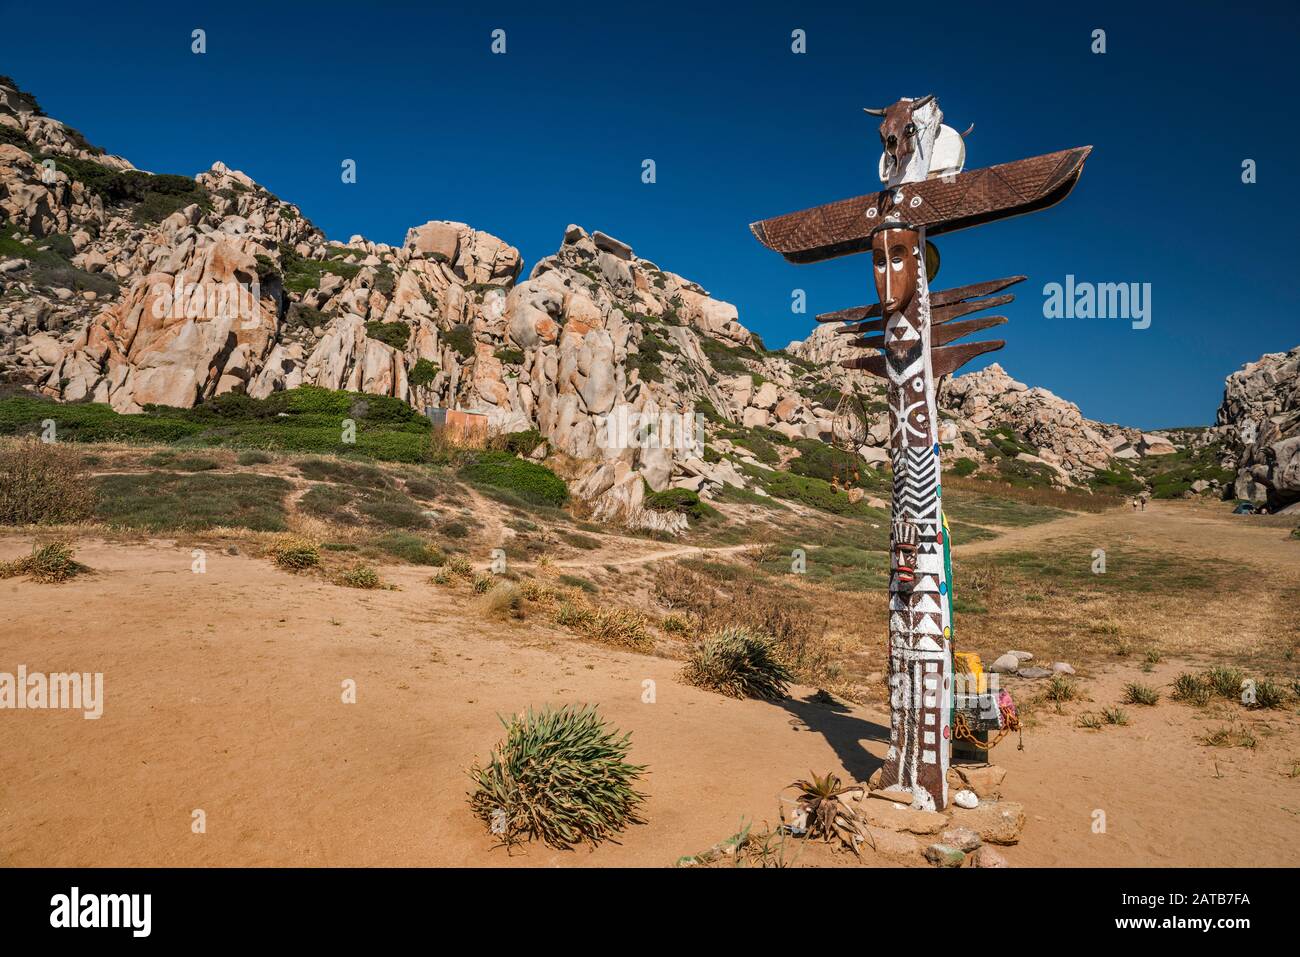 Totem pole, granite formations at Valle della Luna, Capo Testa, near Santa Teresa di Gallura, Gallura region, Sassari province, Sardinia, Italy Stock Photo